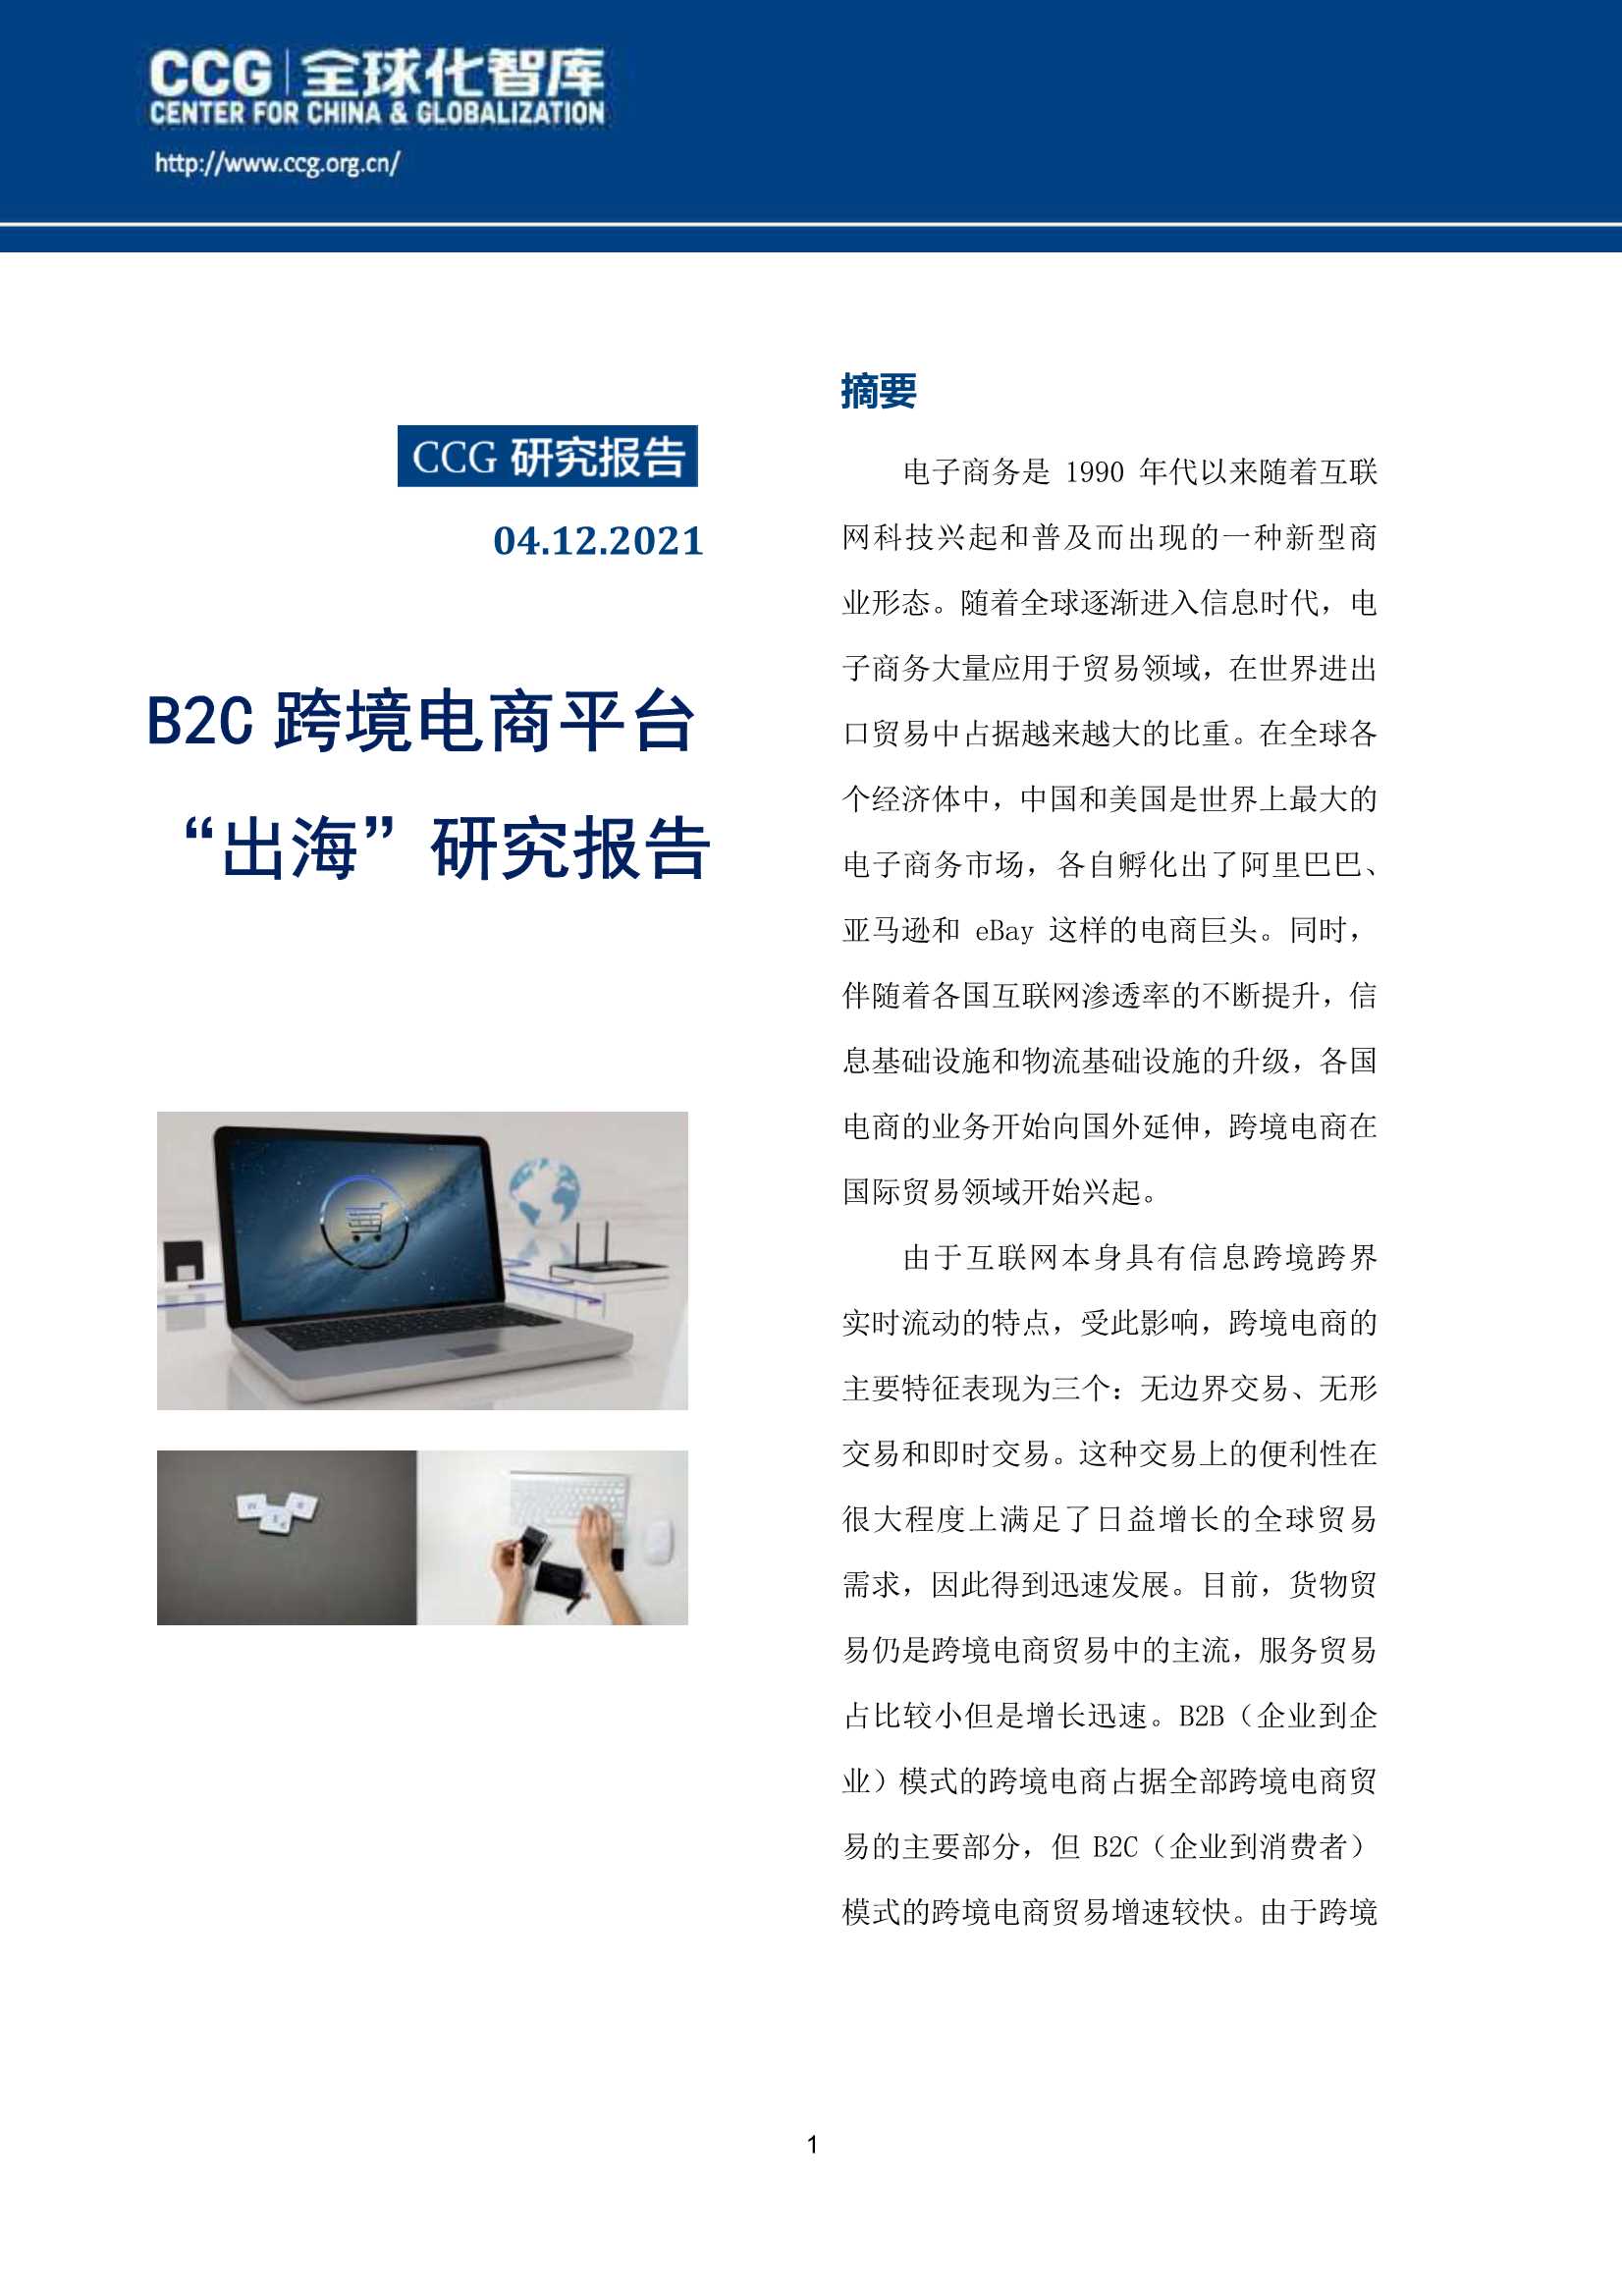 CCG-B2C跨境电商平台“出海”研究报告-2021.05-47页